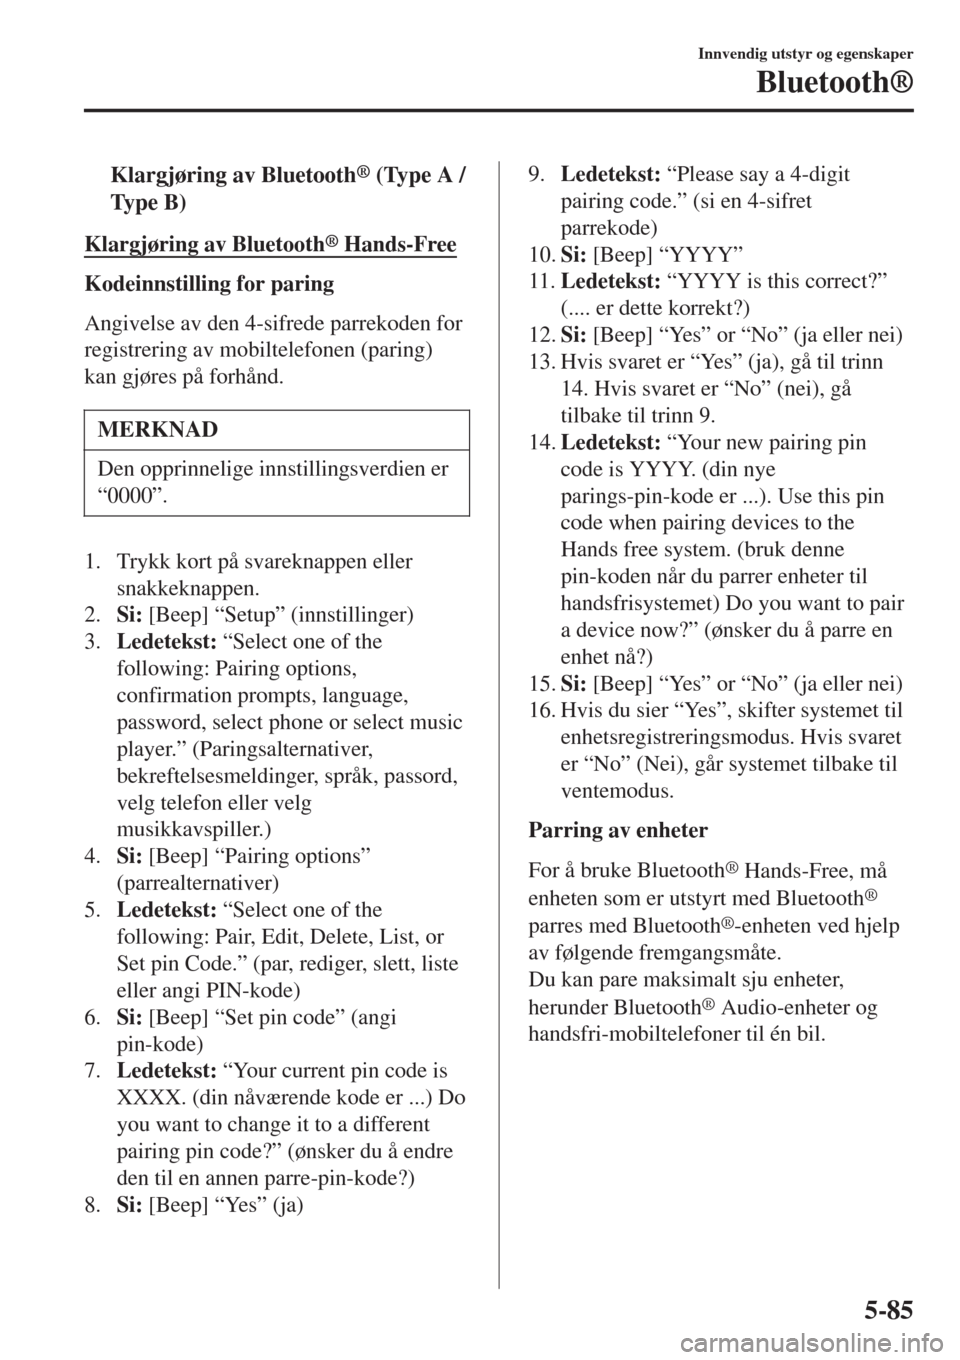 MAZDA MODEL CX-3 2015  Brukerhåndbok (in Norwegian) tKlargjøring av Bluetooth® (Type A /
Ty p e  B )
Klargjøring av Bluetooth® Hands-Free
Kodeinnstilling for paring
Angivelse av den 4-sifrede parrekoden for
registrering av mobiltelefonen (paring)
k